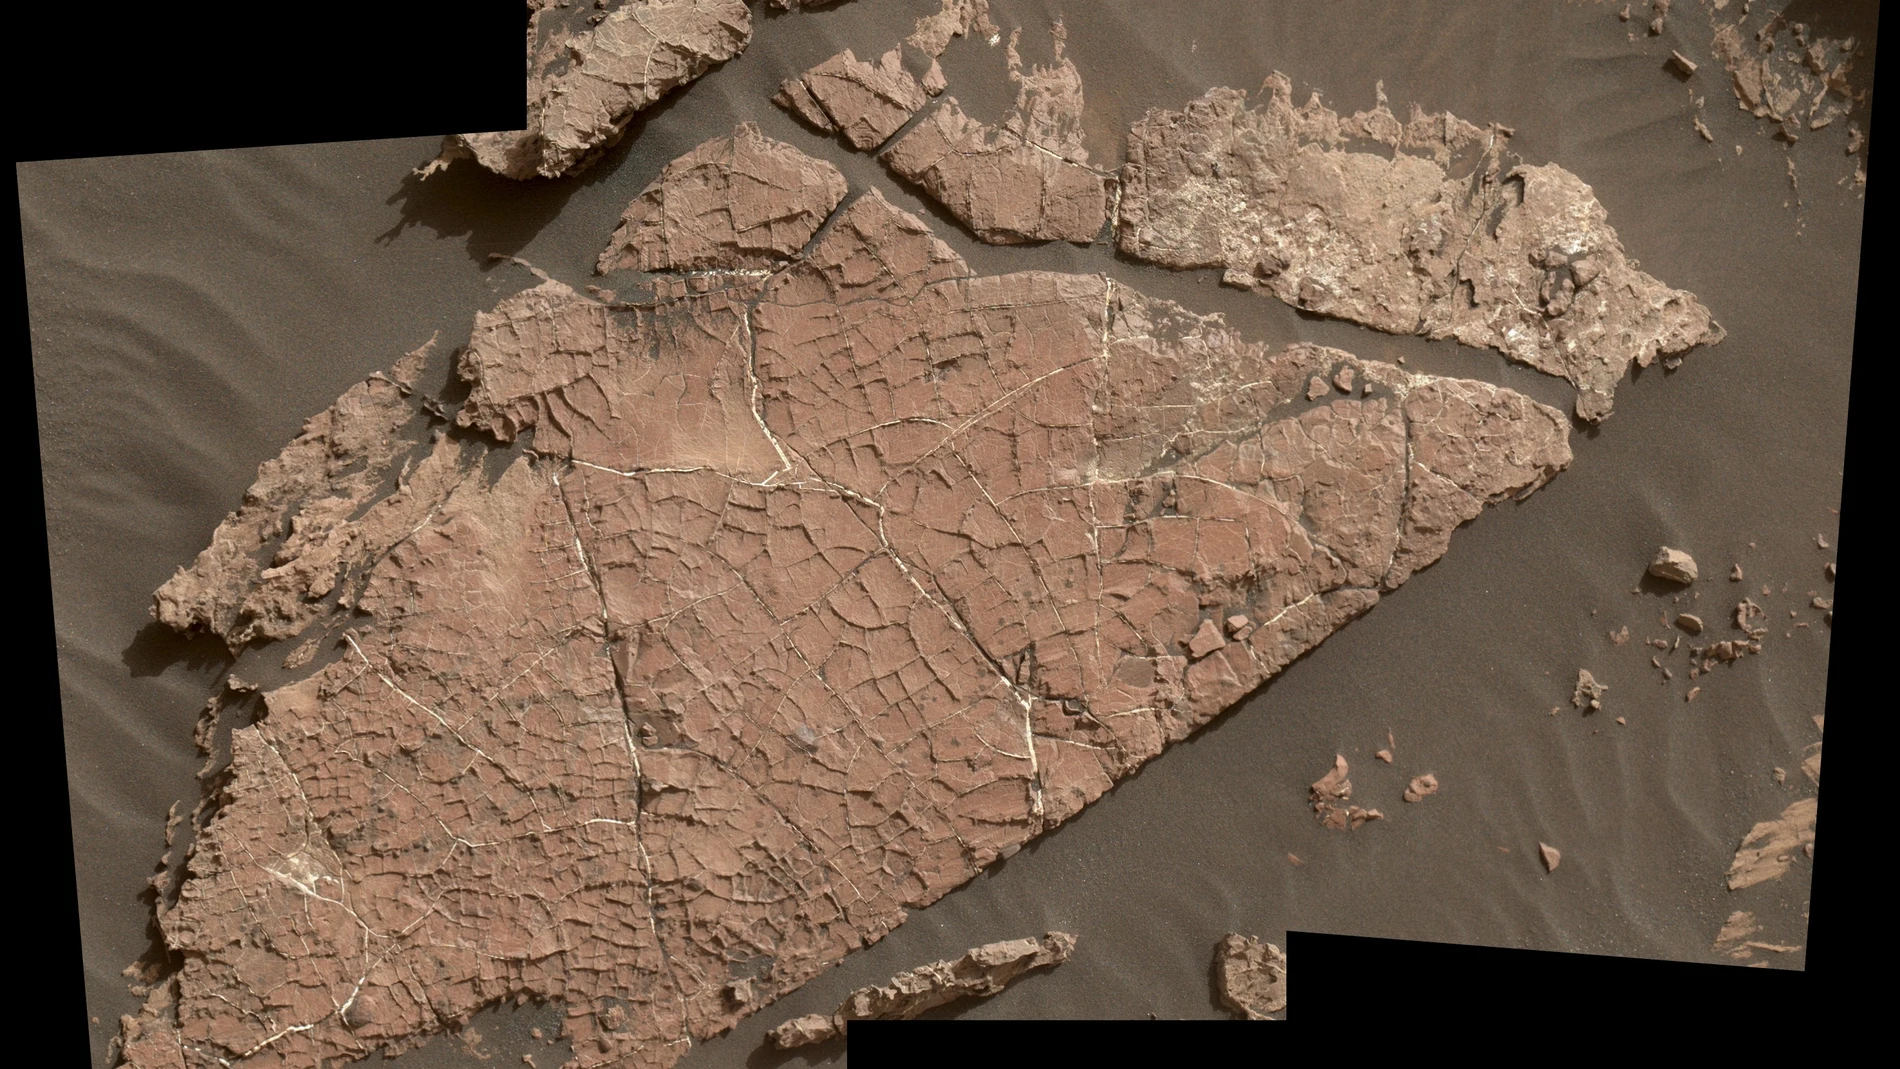 Imagen satélite de la red de grietas encontradas en Gale, Marte.